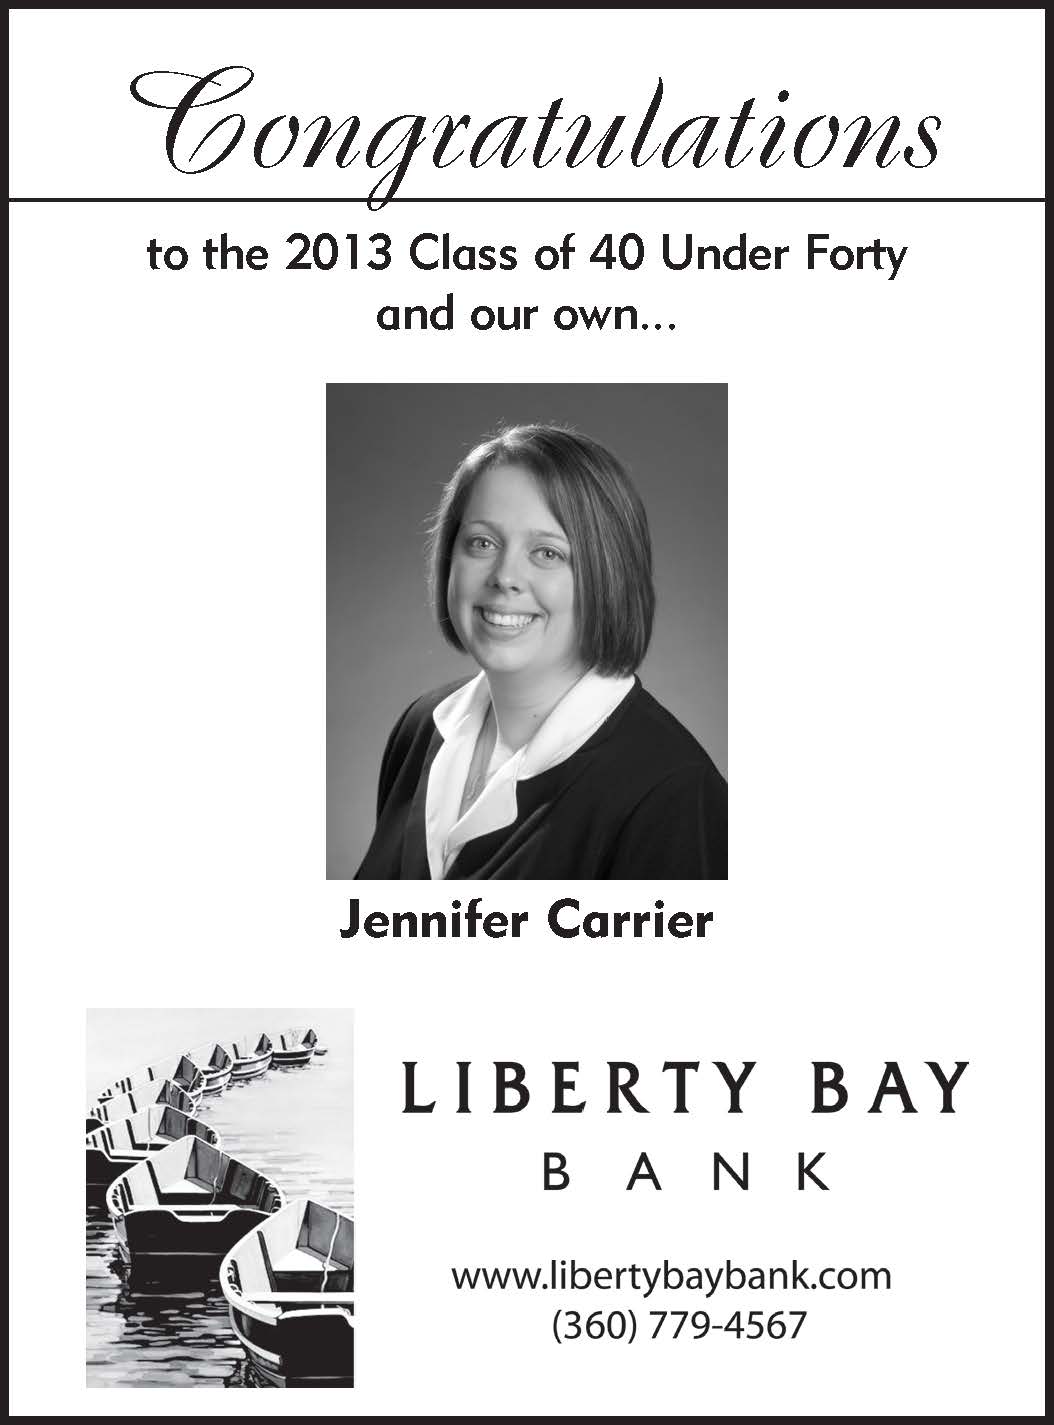 Liberty Bay Bank - Jennifer Carrier